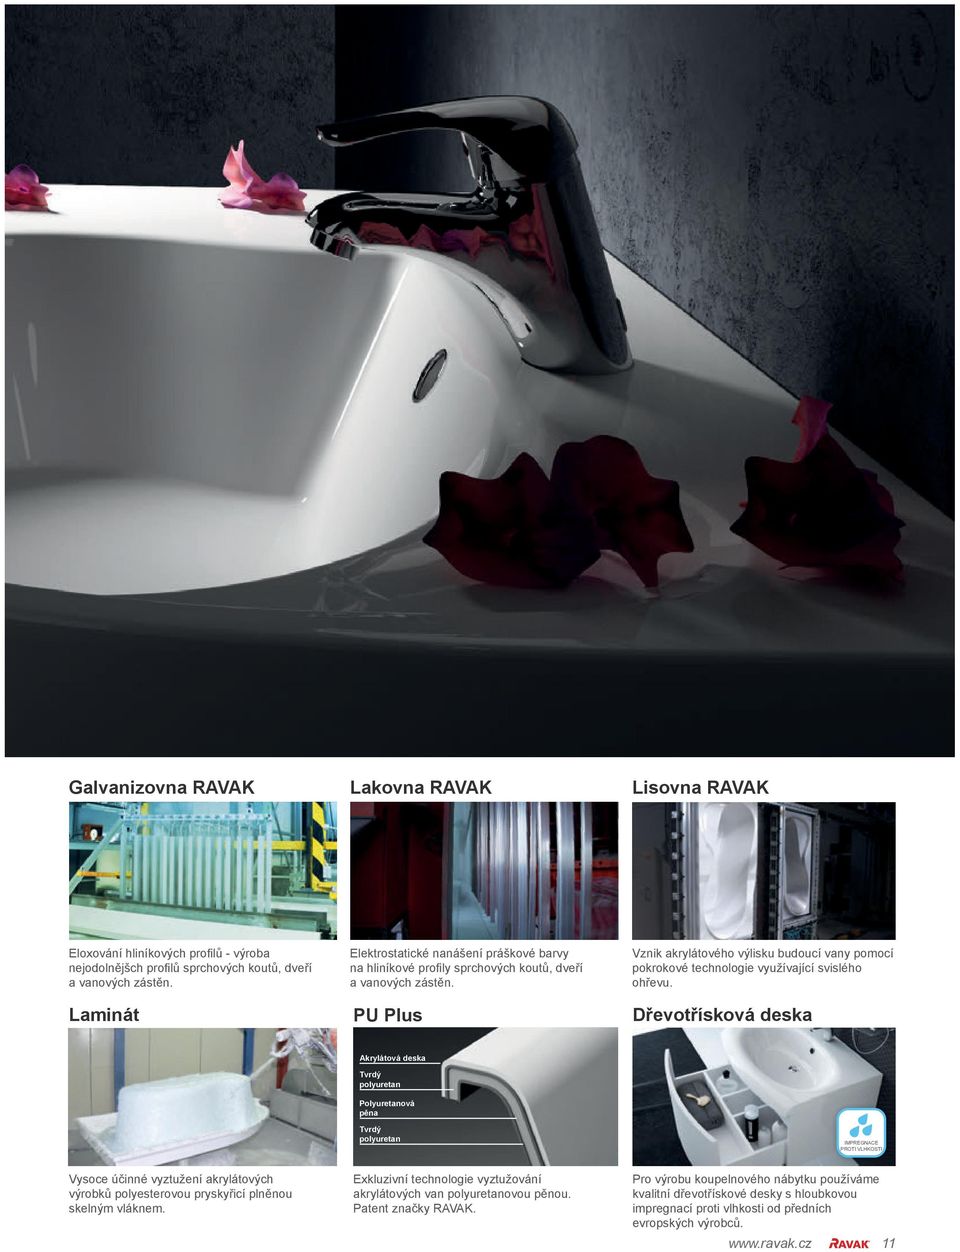 PU Plus Vznik akrylátového výlisku budoucí vany pomocí pokrokové technologie využívající svislého ohřevu.